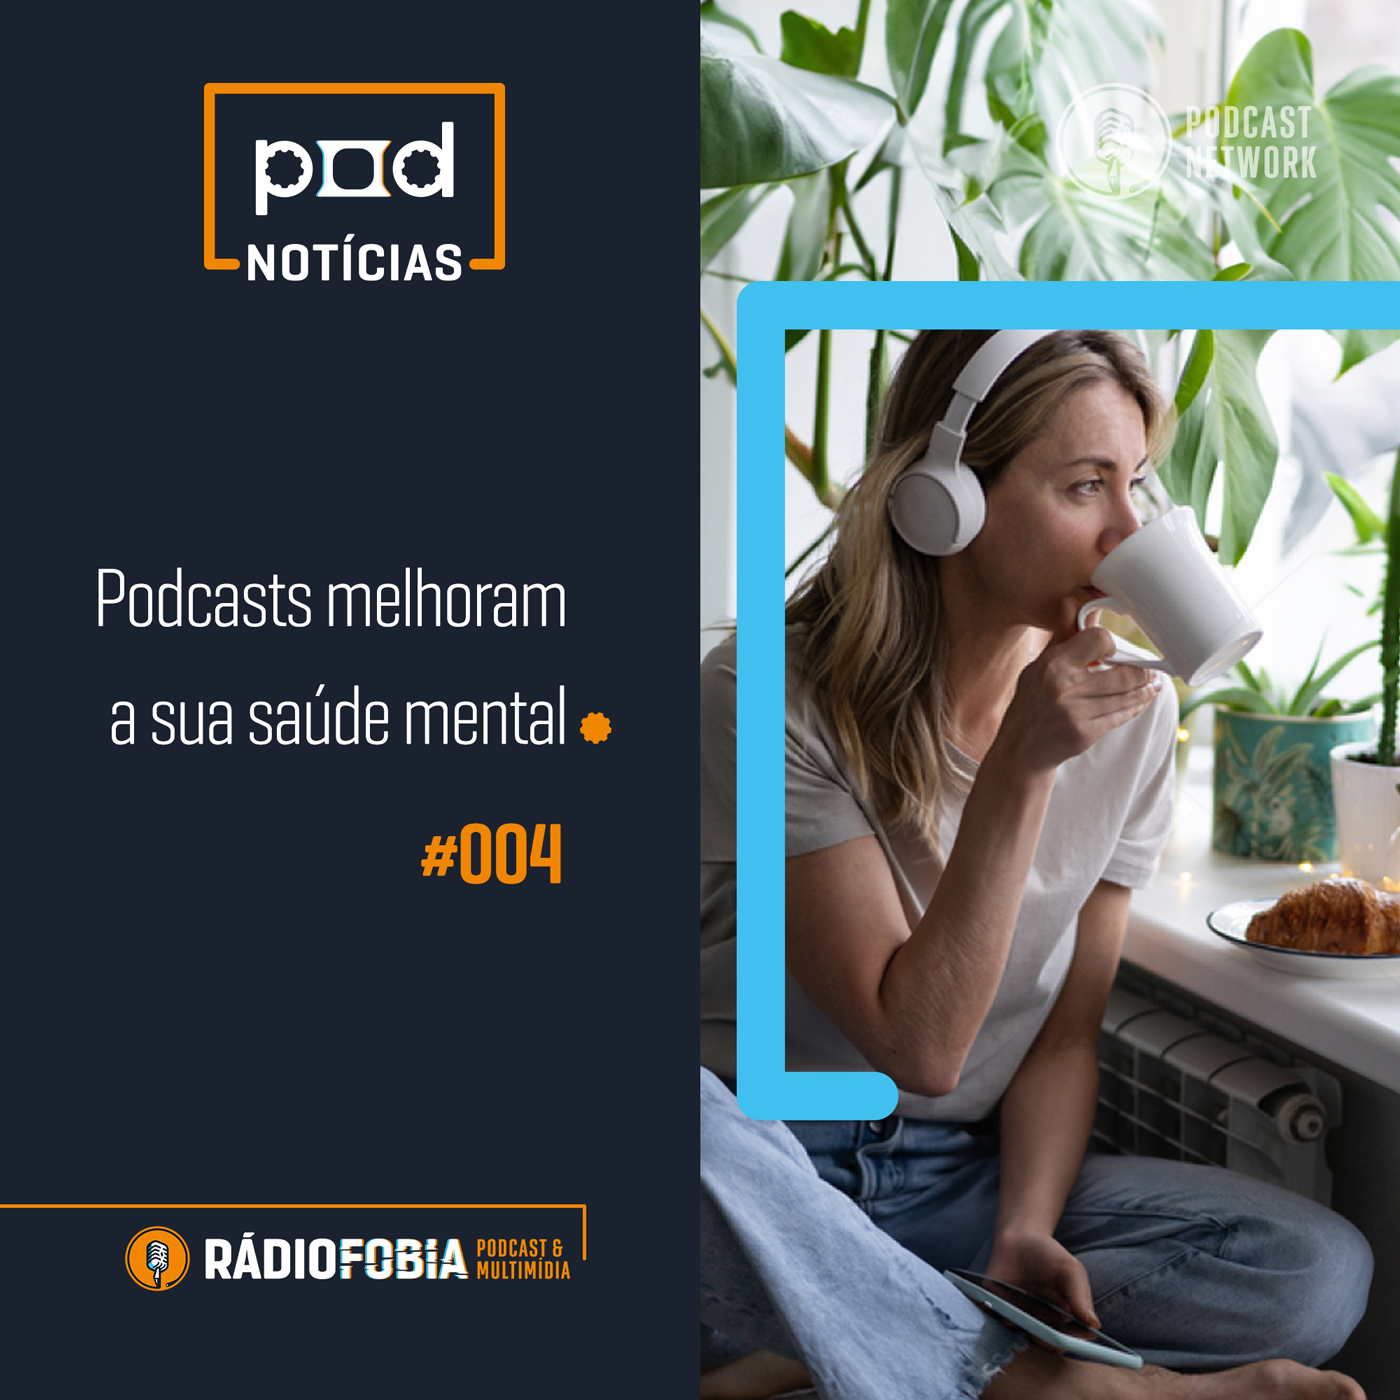 Pod Notícias 004 - Podcasts melhoram a sua saúde mental